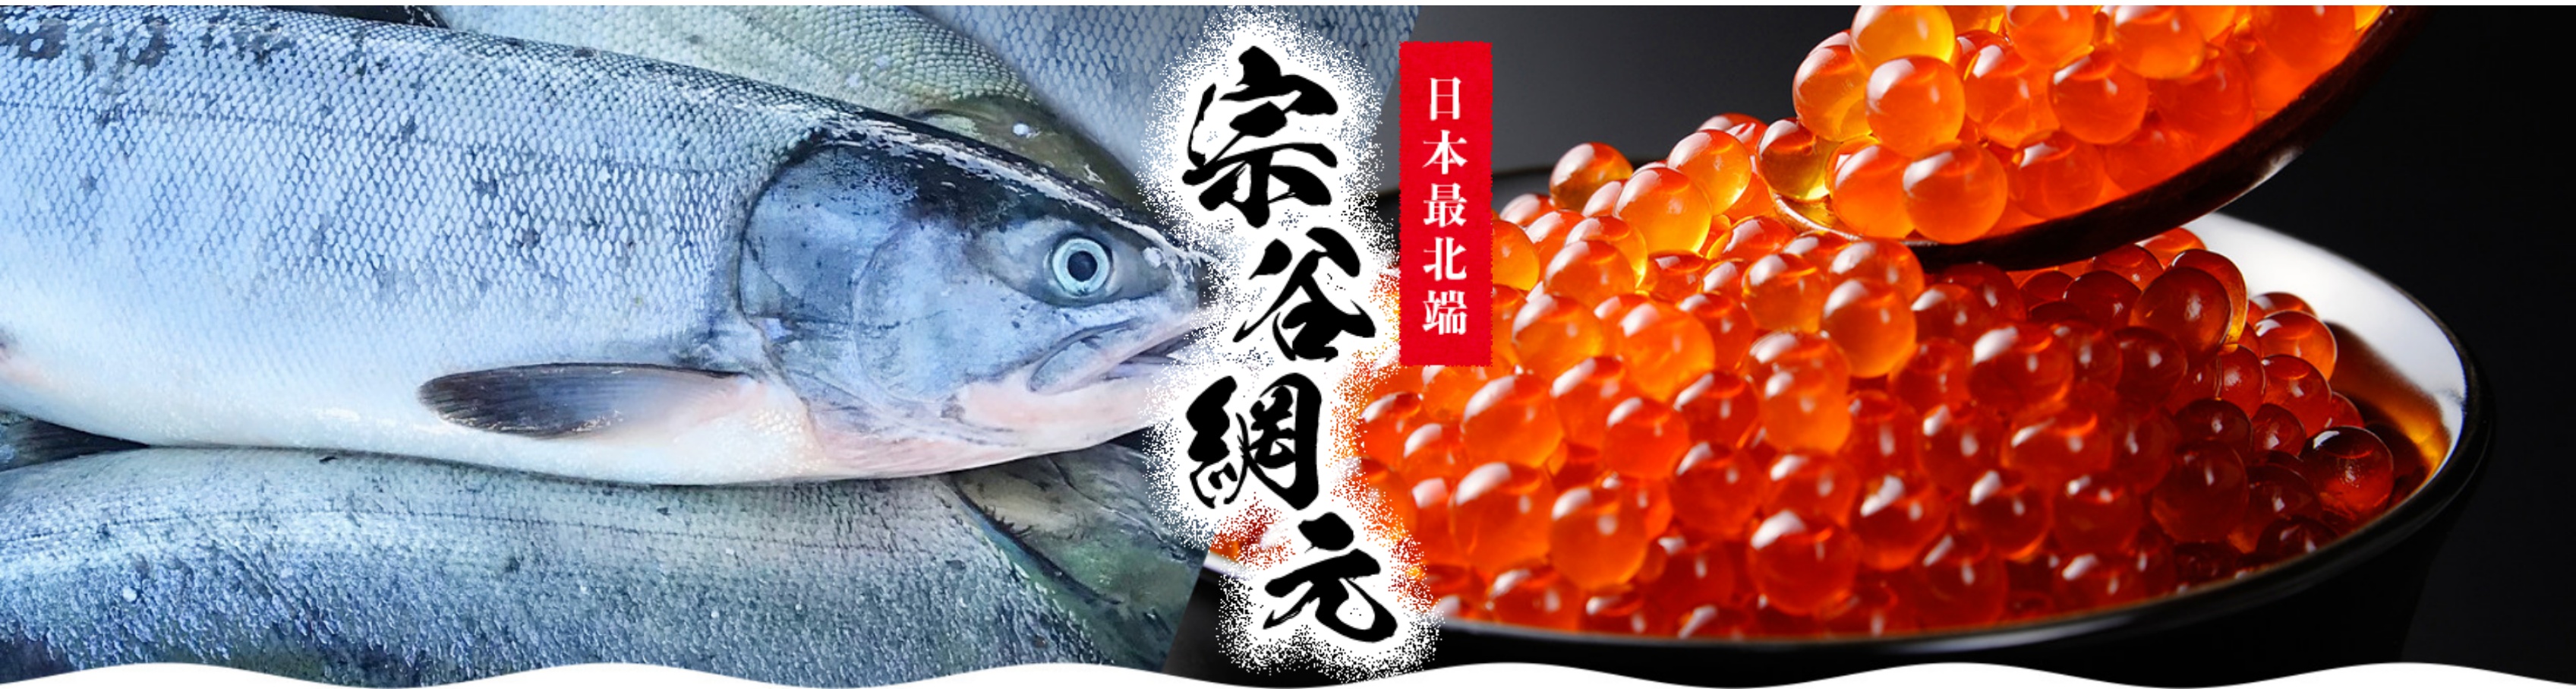 海産物天然鮭のマルトウ 石井商店 ヘッダー画像